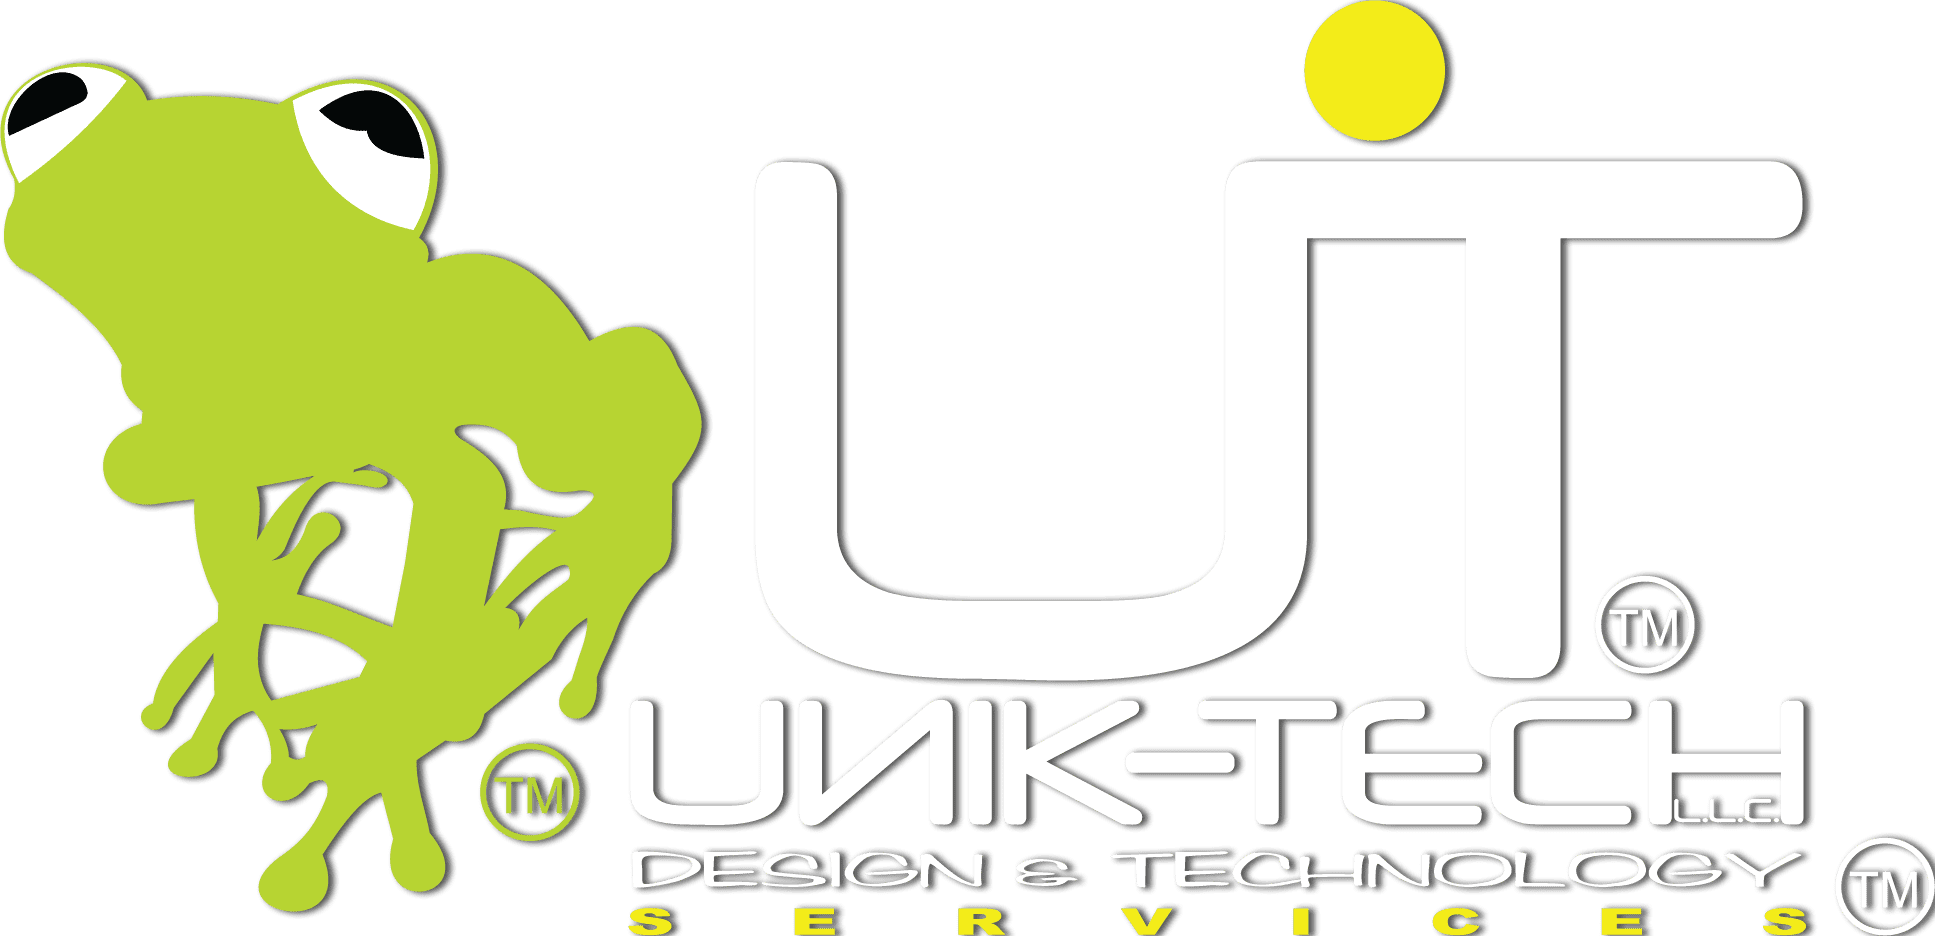 Unik-Tech LLC logo with white text.